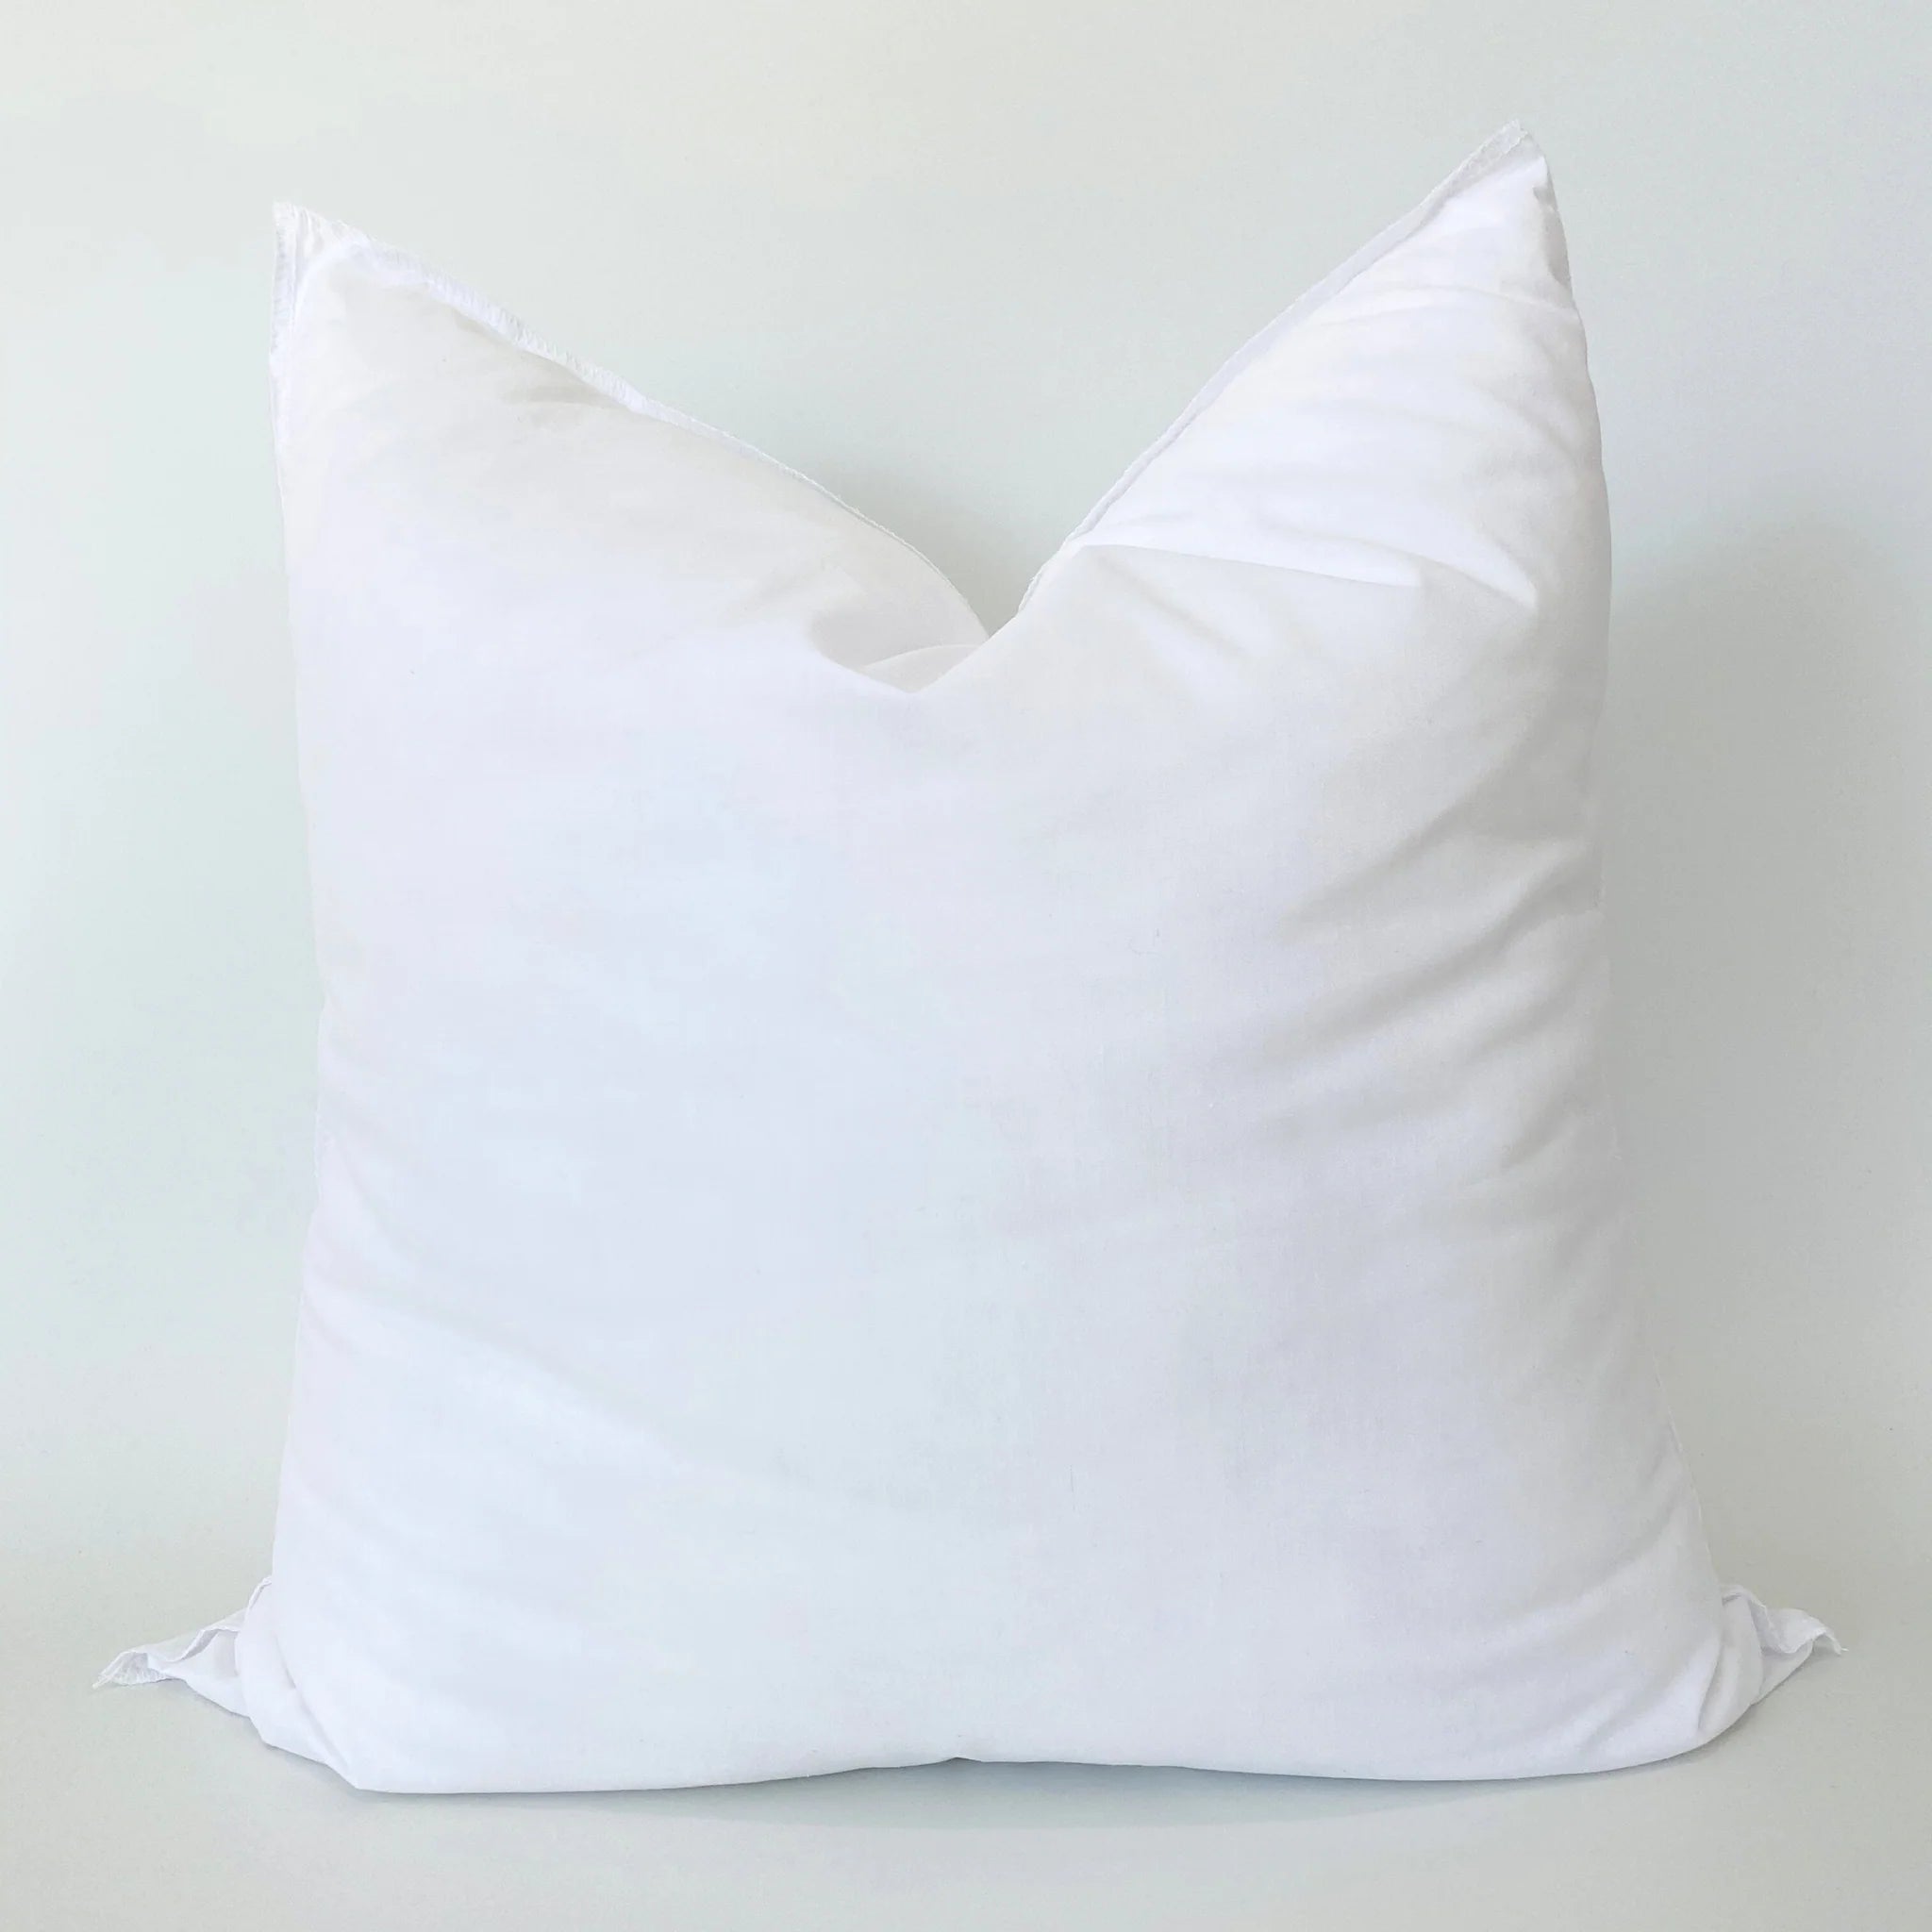 Bed Pillow Insert Combo with 14x20 Lumbar